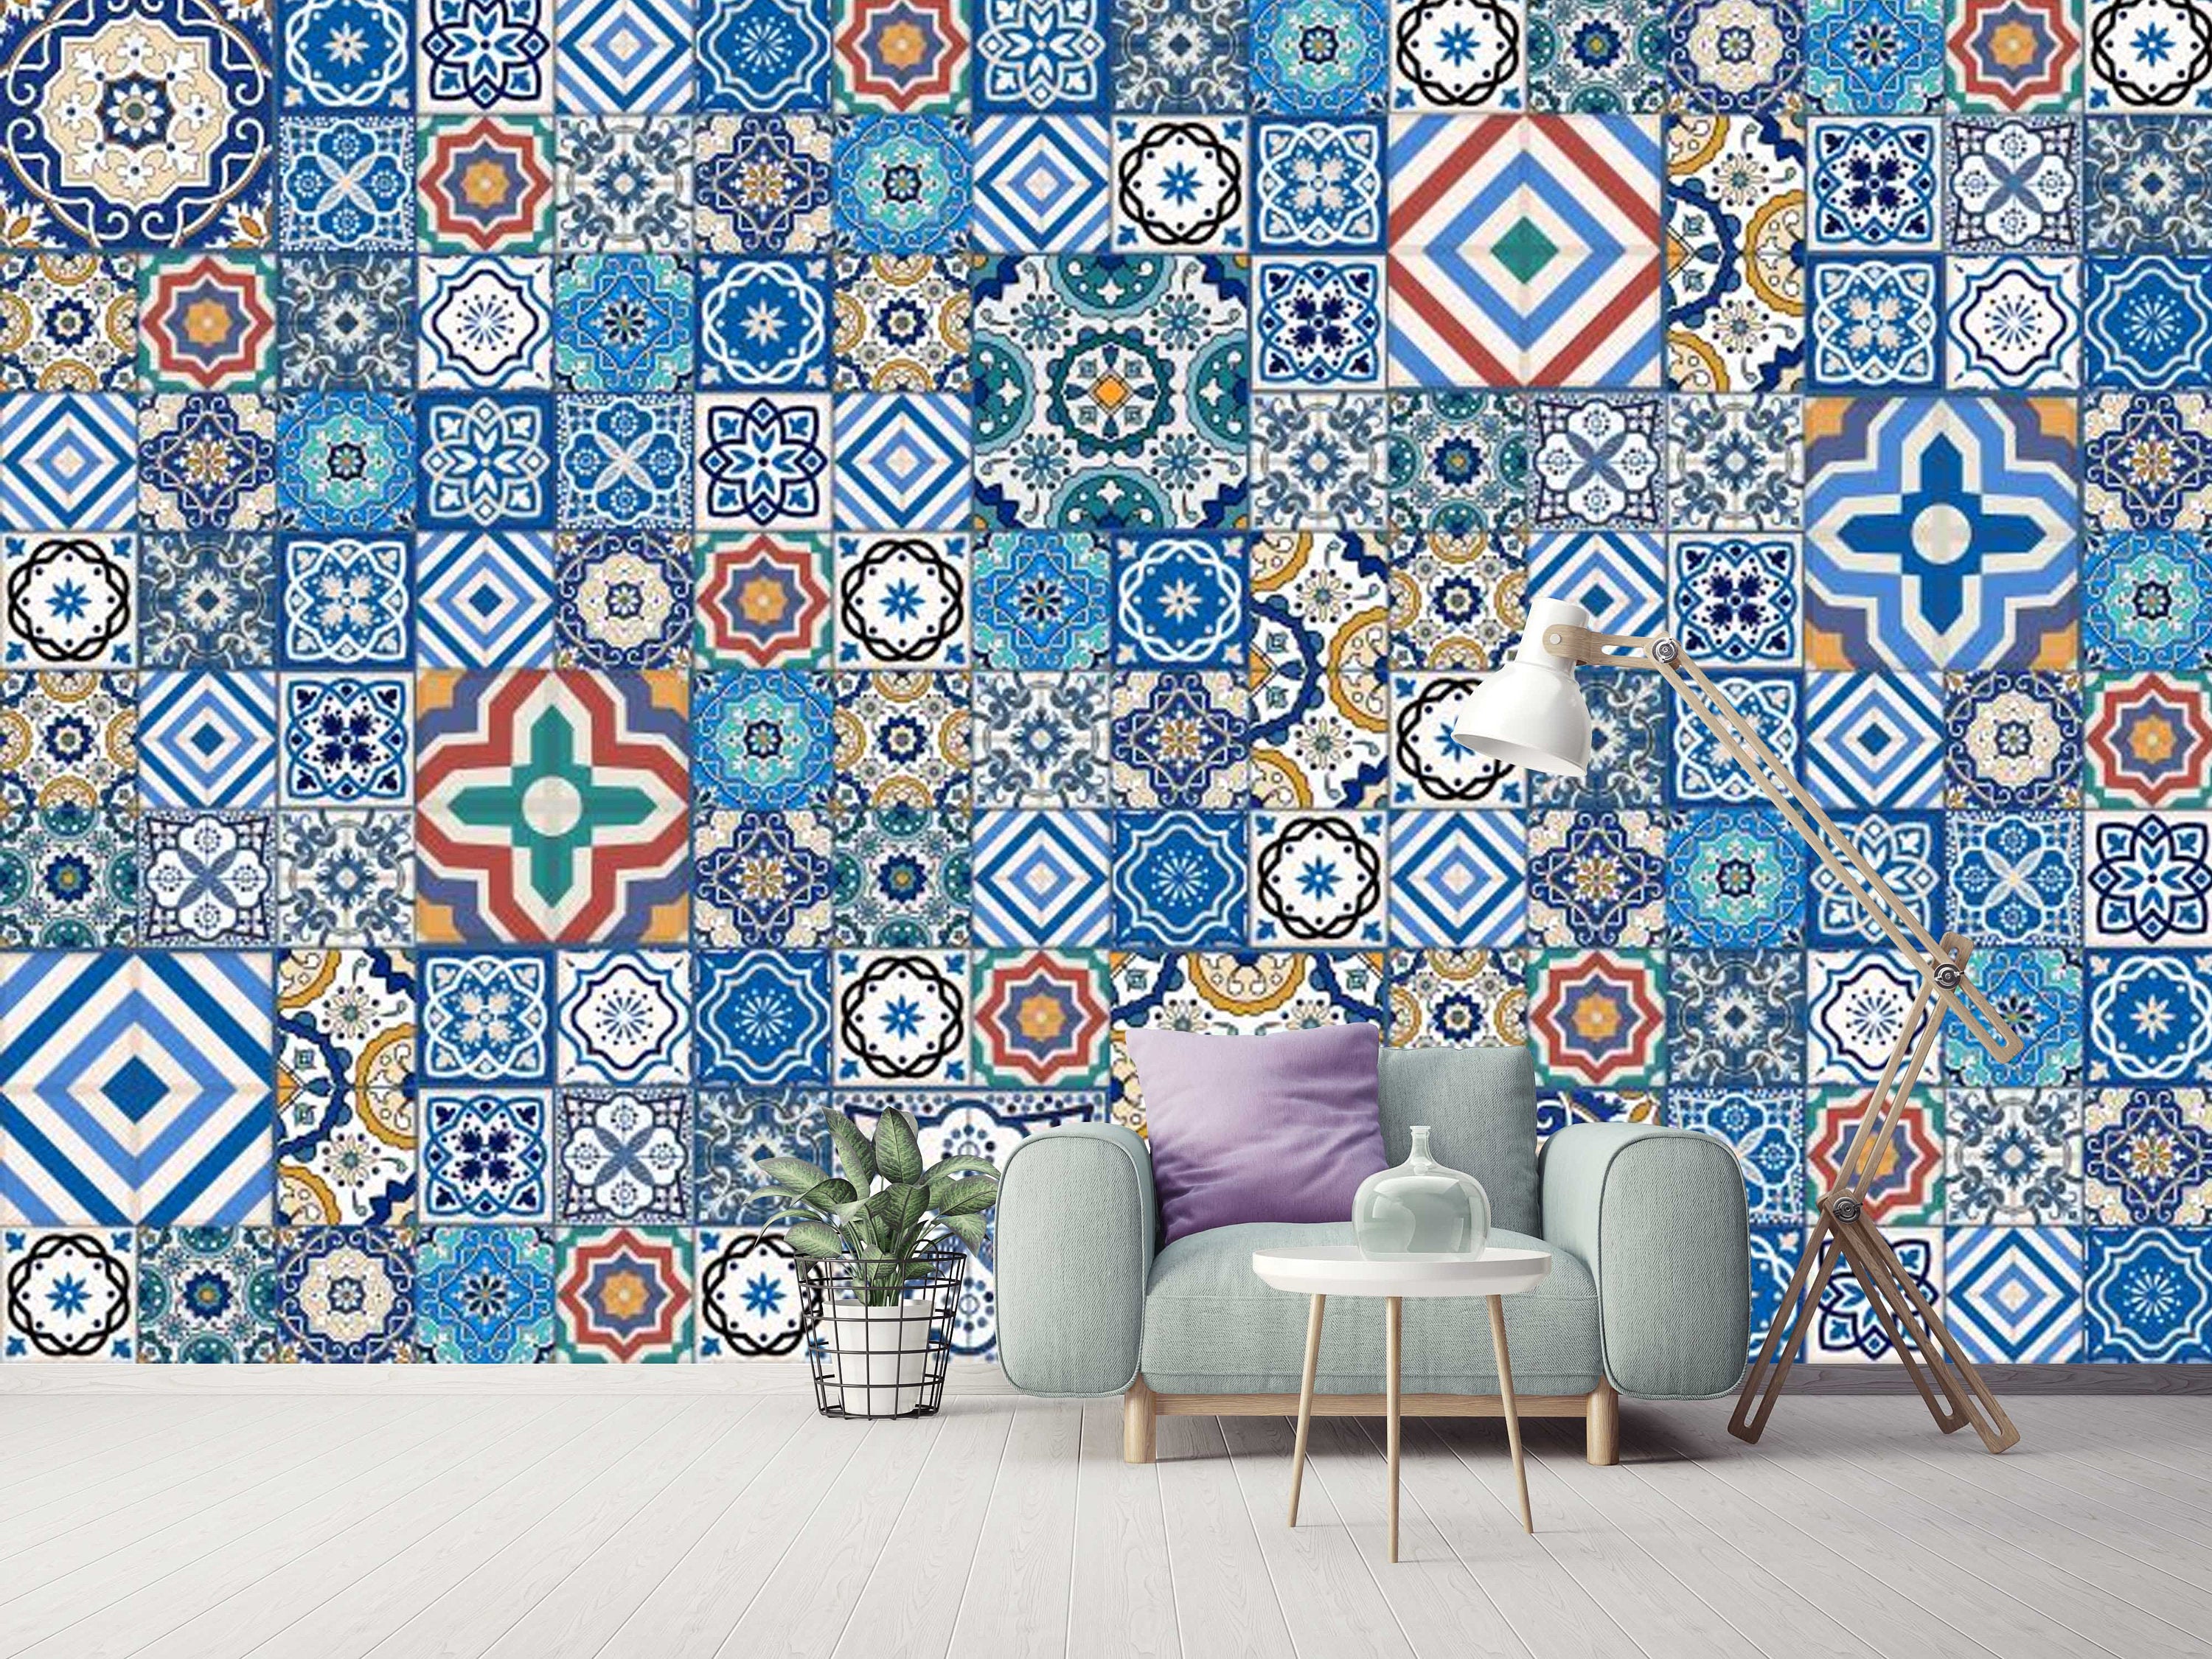 Arab Motif Blue Square Design Wallpaper Decor Wall Art